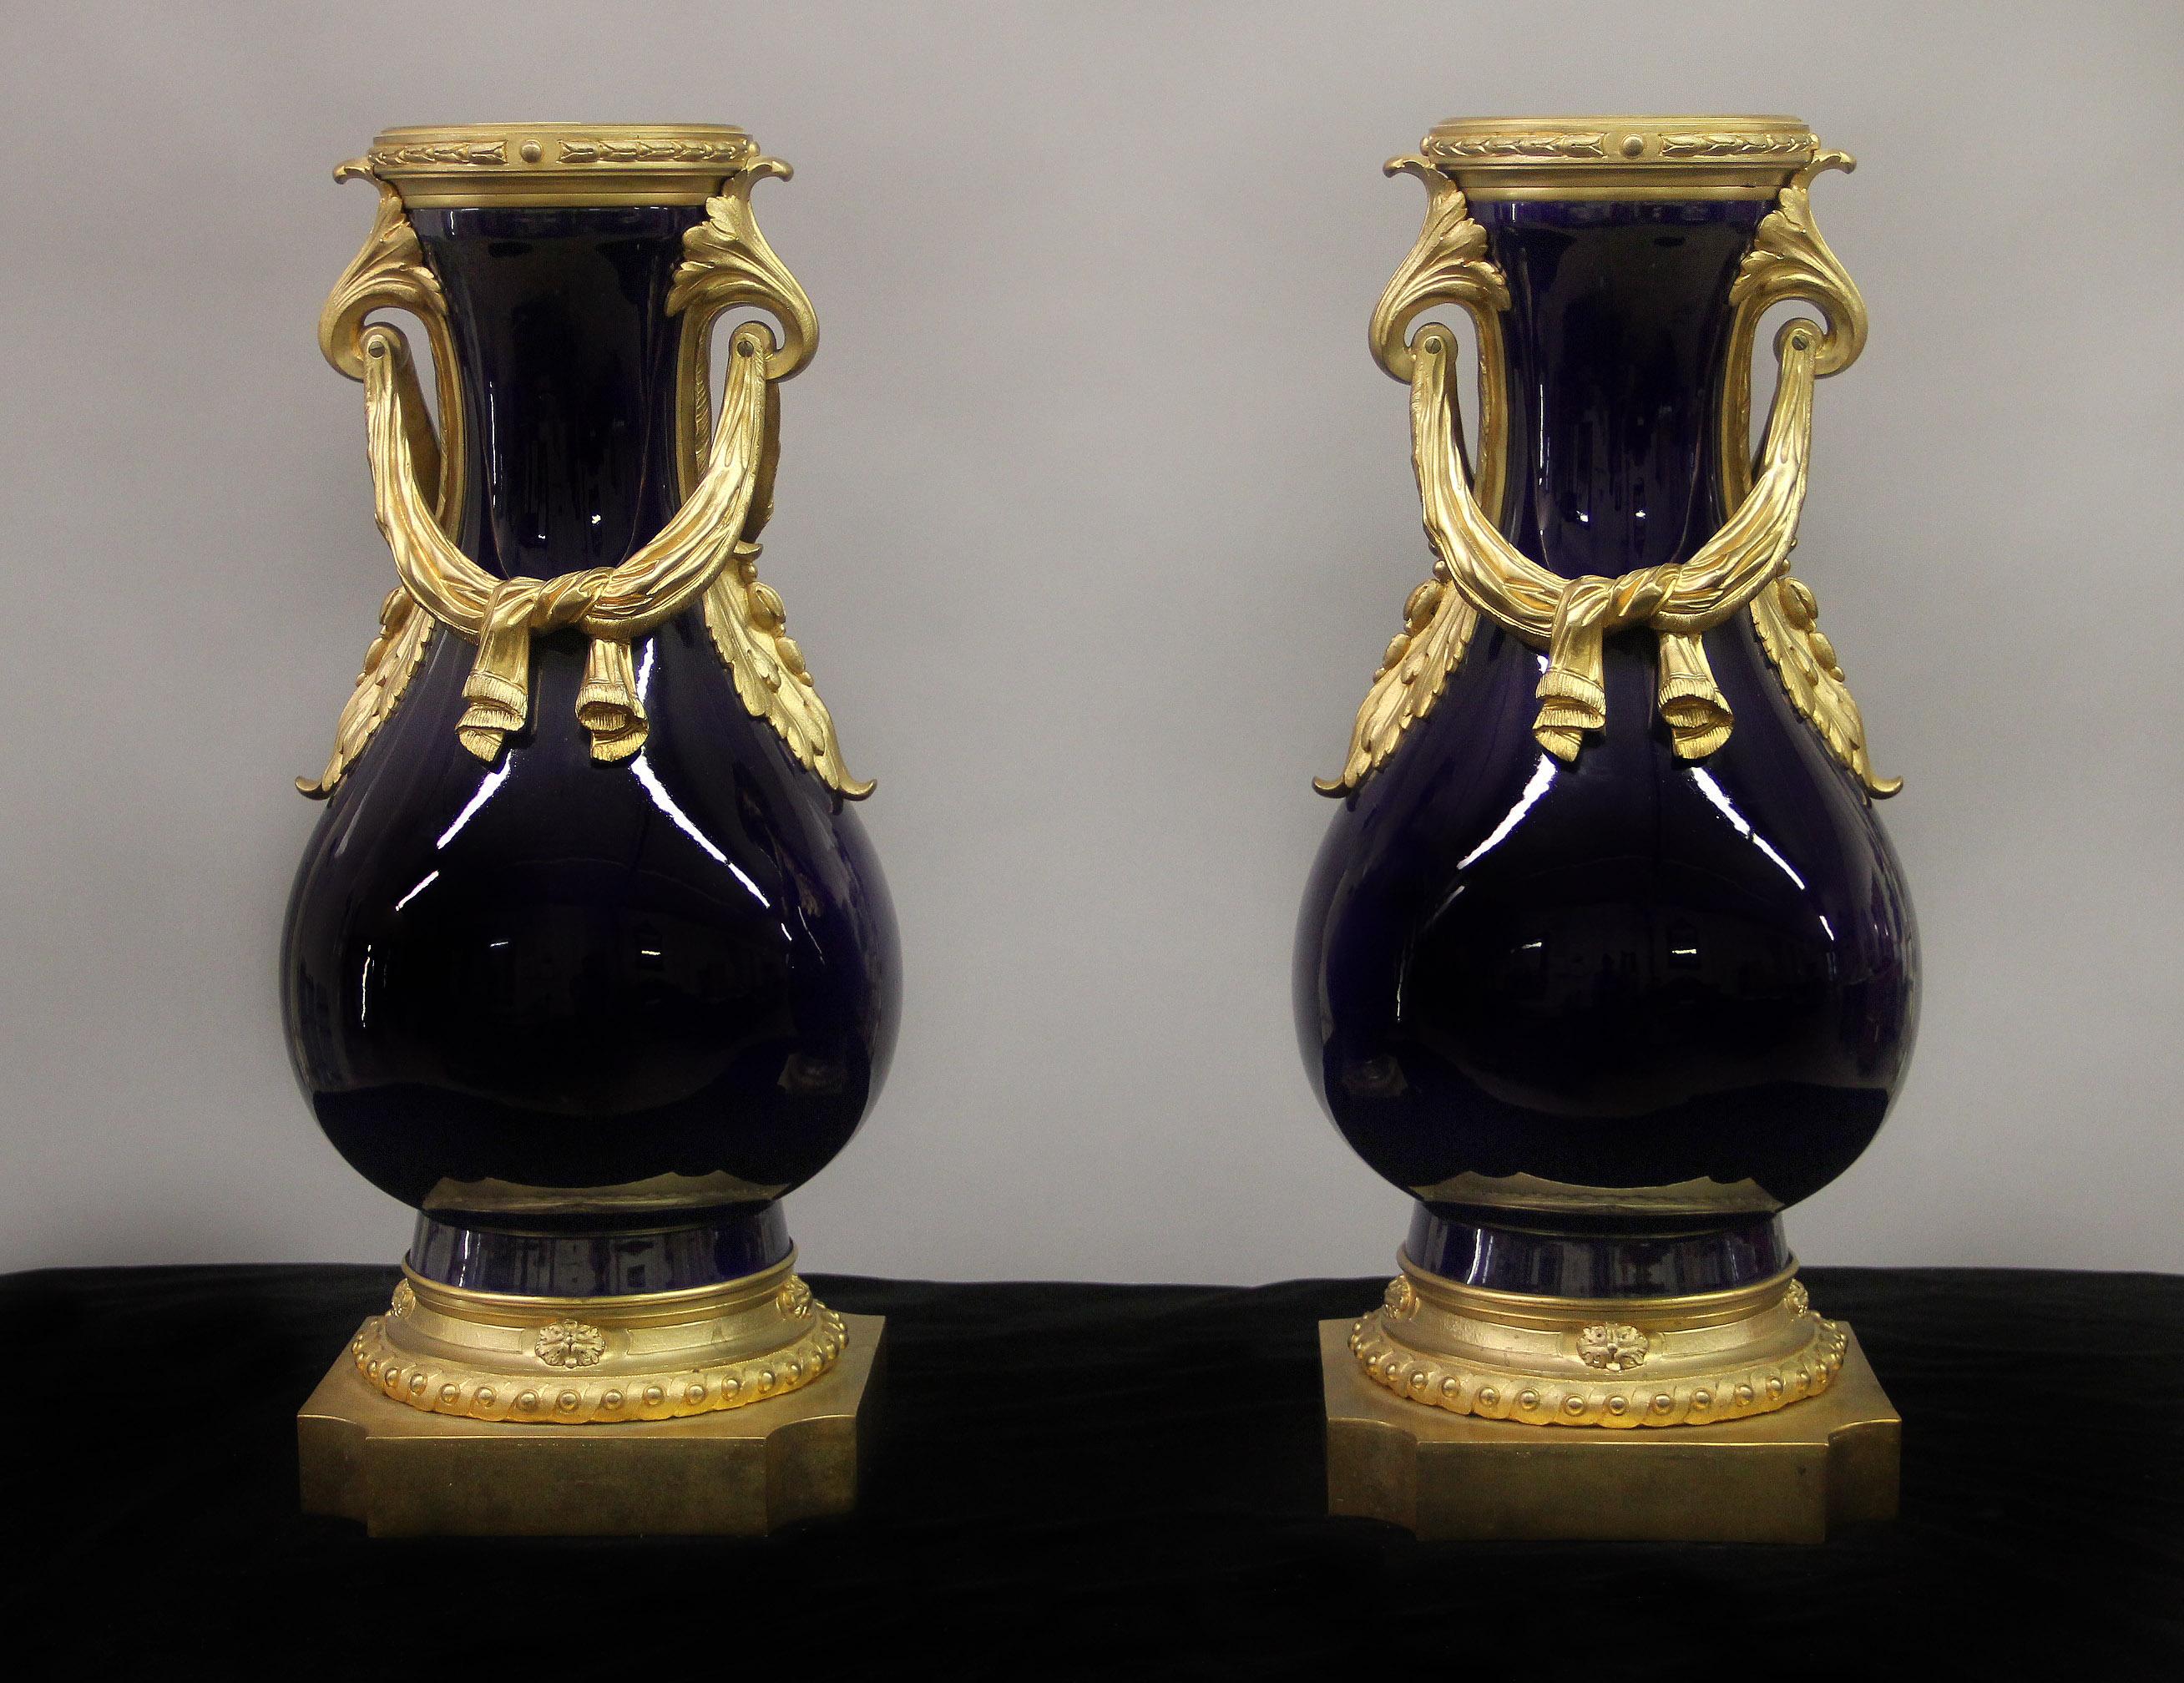 Paire de vases en porcelaine de Sèvres montés en bronze doré, datant de la fin du XIXe siècle.

Les vases bleu cobalt sont montés avec des draperies et des poignées en bronze. 

Fin 1739, début 1740, la manufacture de porcelaine de Sèvres a